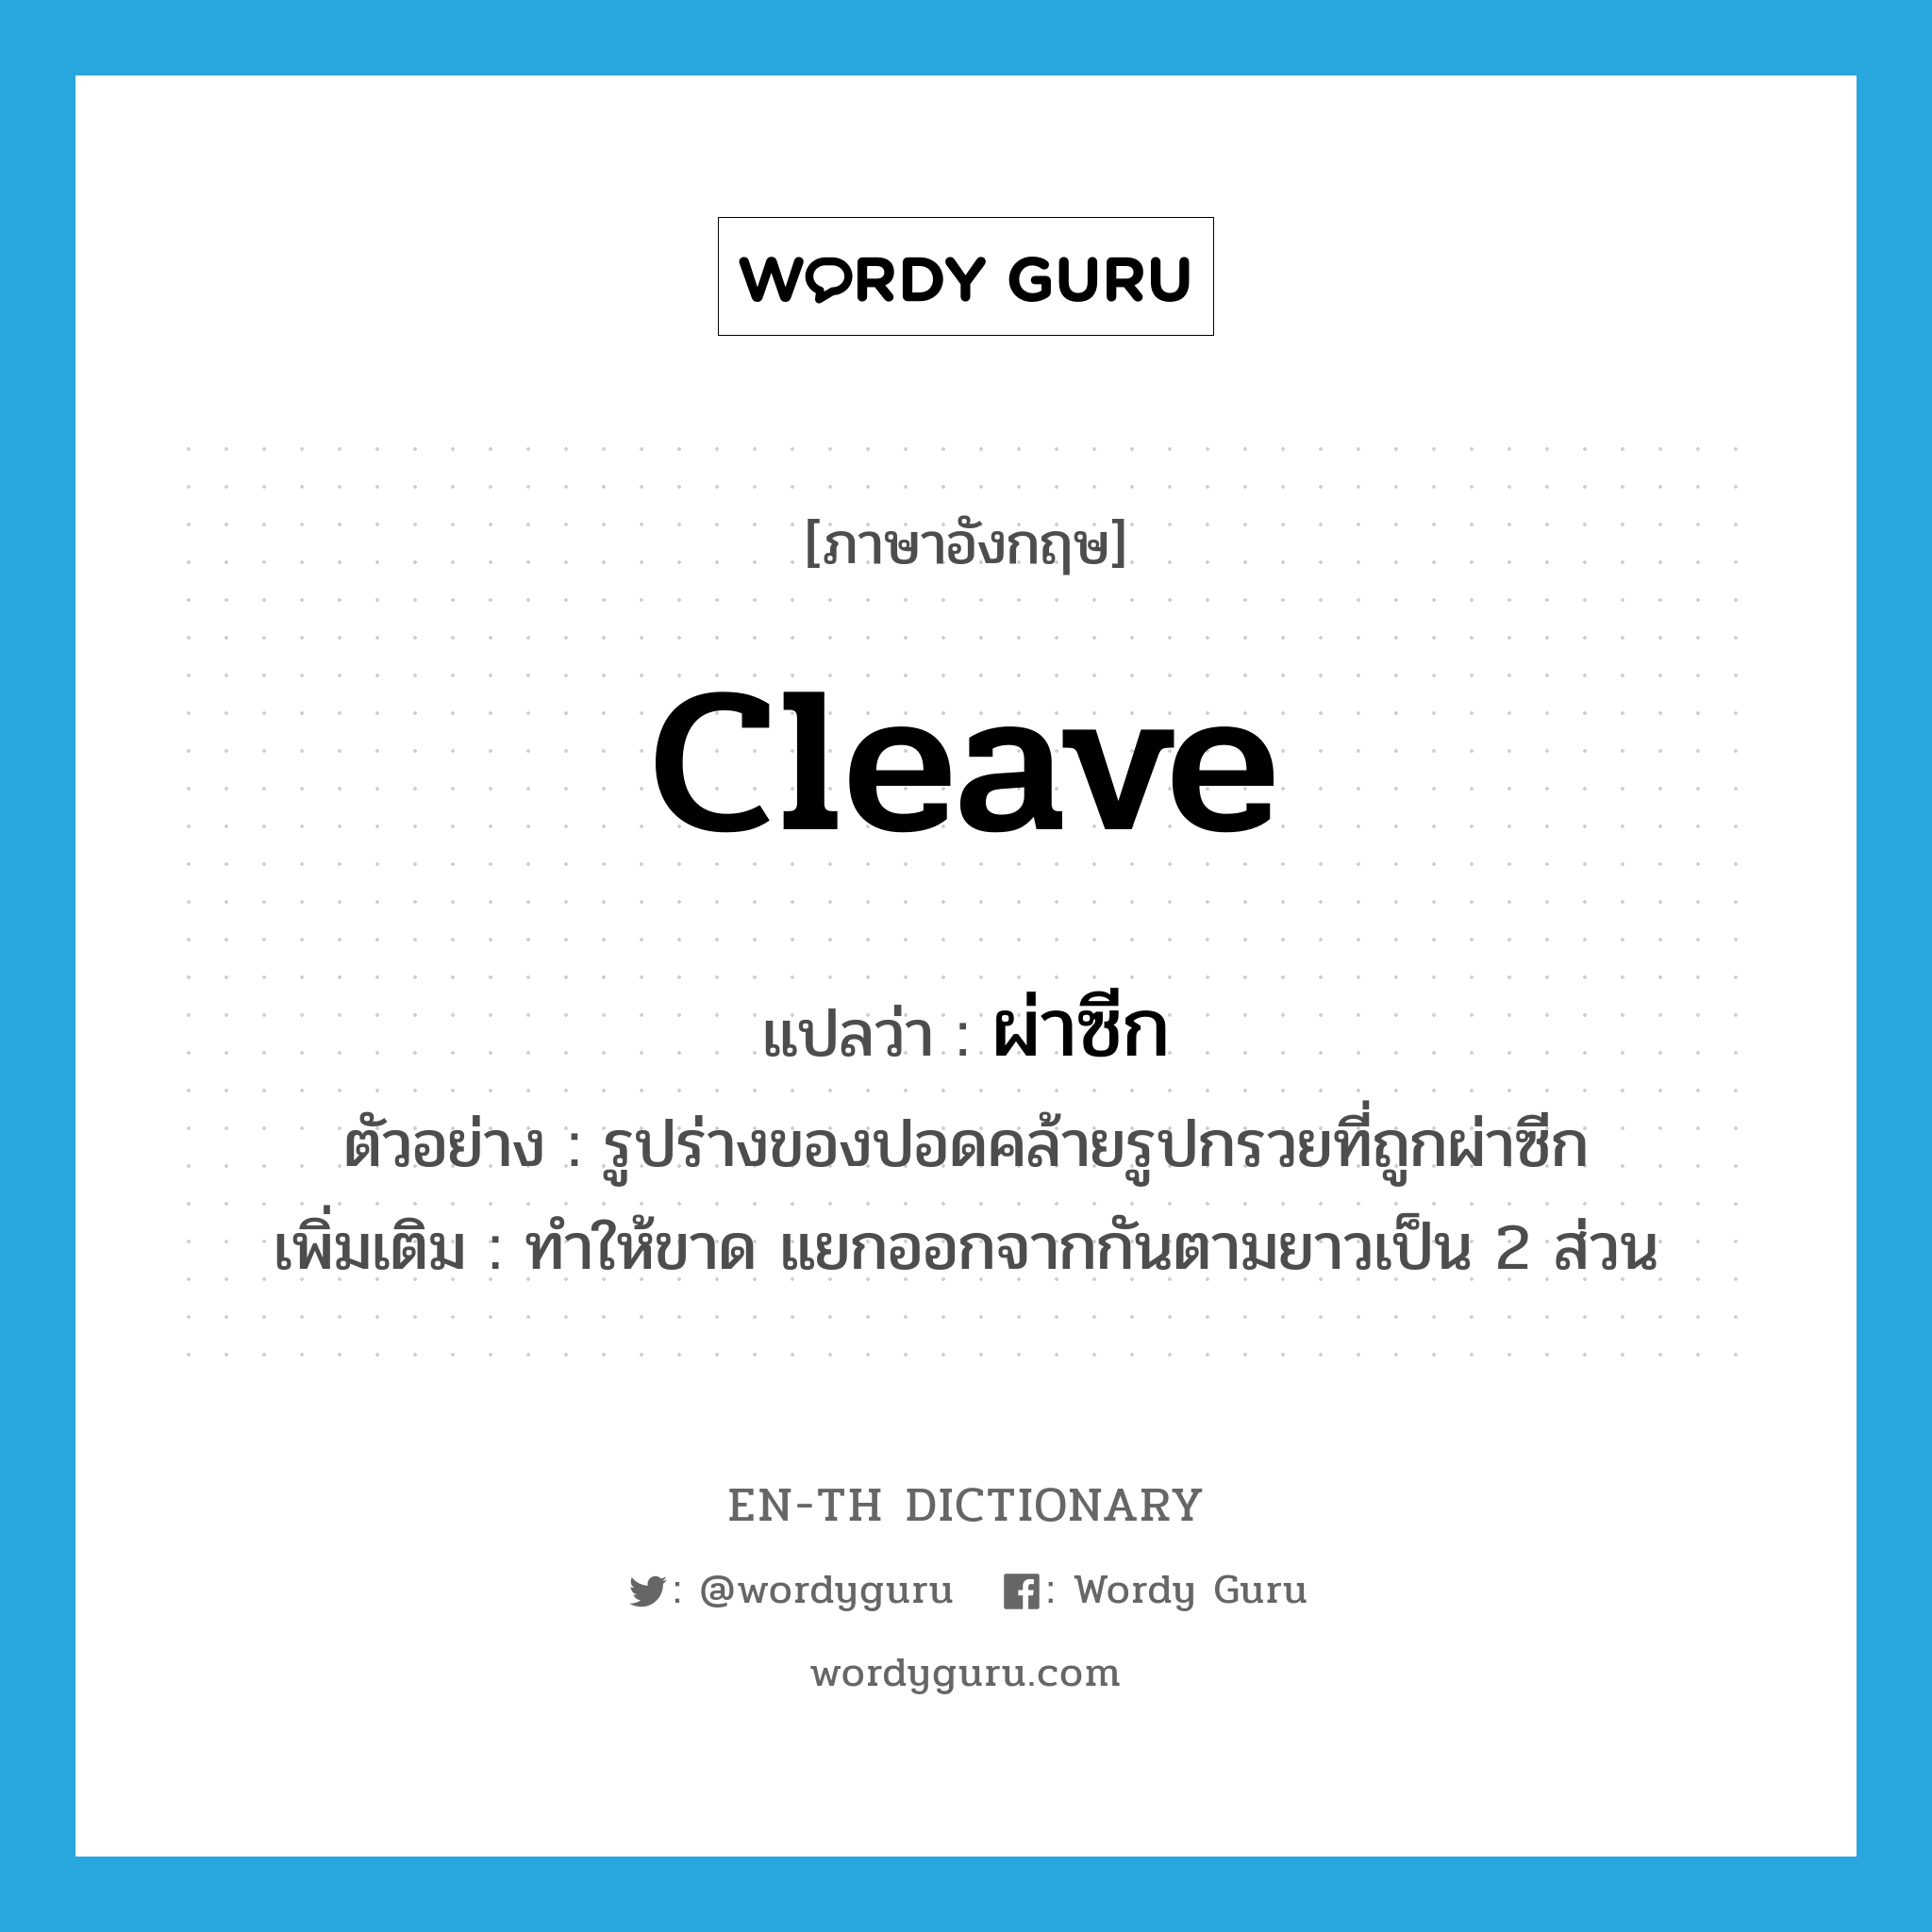 ผ่าซีก ภาษาอังกฤษ?, คำศัพท์ภาษาอังกฤษ ผ่าซีก แปลว่า cleave ประเภท V ตัวอย่าง รูปร่างของปอดคล้ายรูปกรวยที่ถูกผ่าซีก เพิ่มเติม ทำให้ขาด แยกออกจากกันตามยาวเป็น 2 ส่วน หมวด V